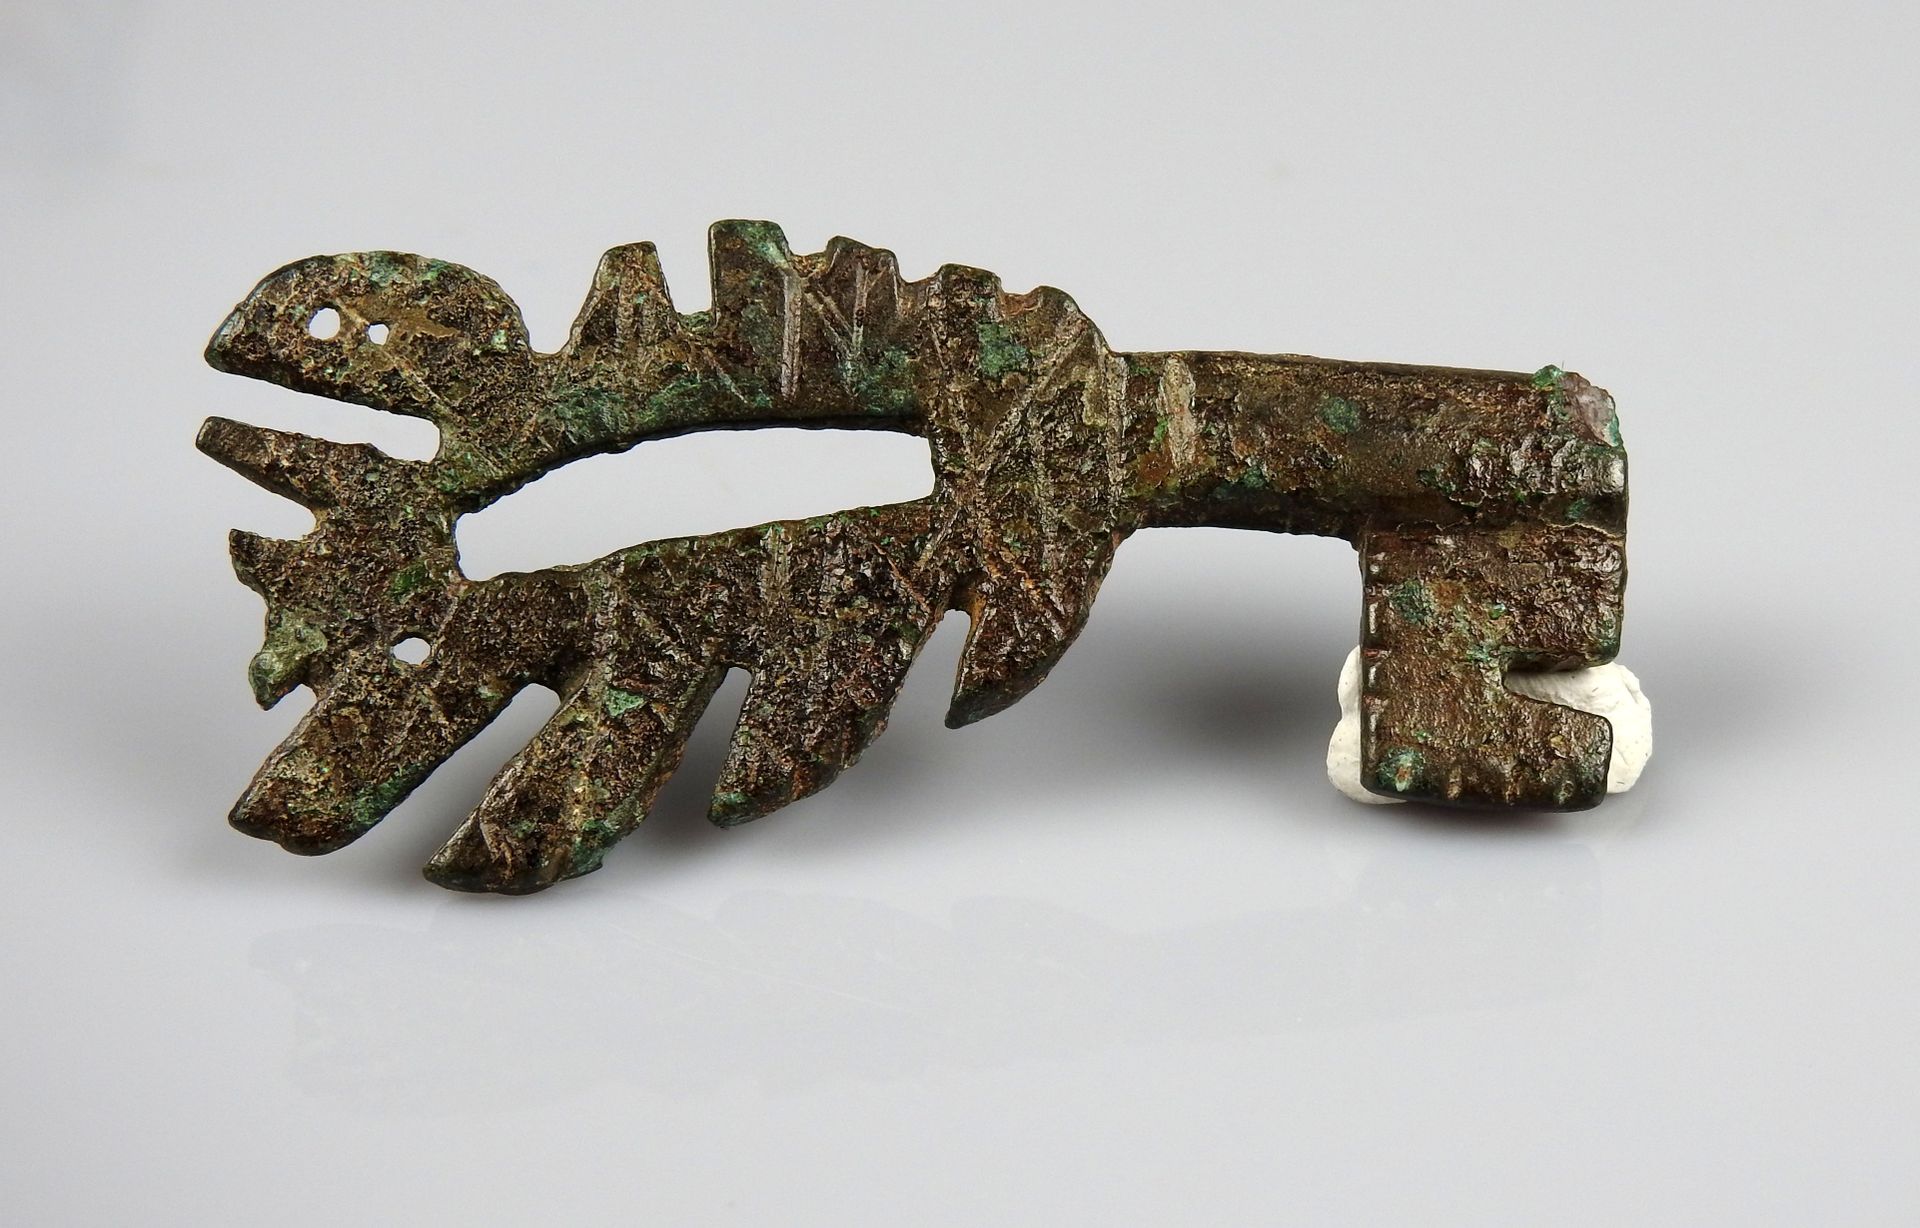 Null 好奇的旋转钥匙与工作的手柄

前19世纪某省著名人士的收藏

青铜6.3厘米

罗马时期或后期